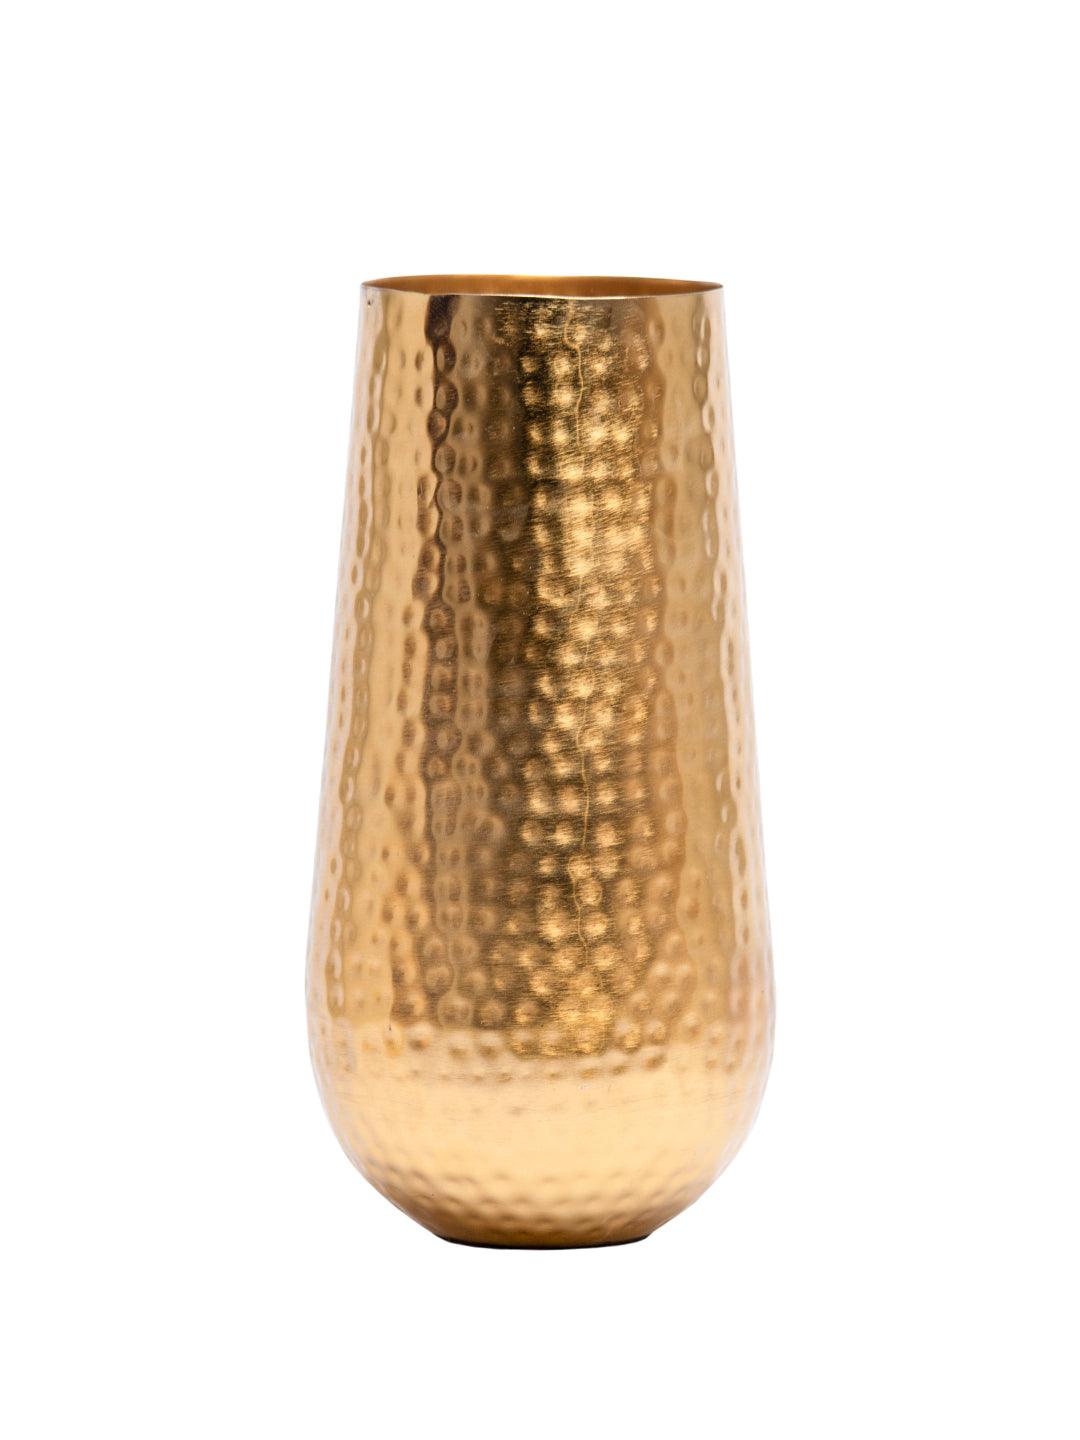 Decorative Golden Hammered Vase - Cylinder Shape - MARKET 99